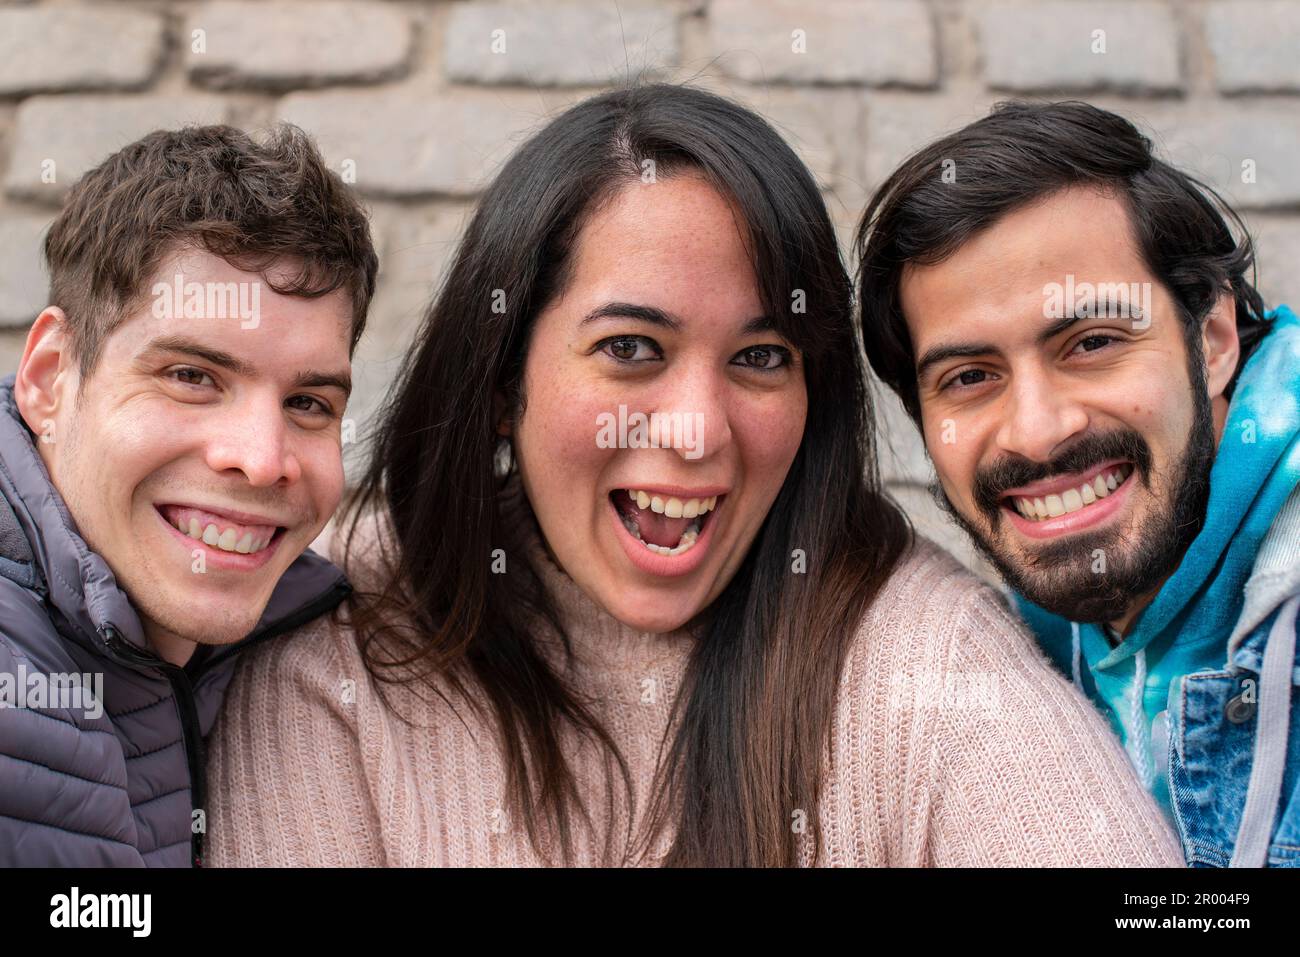 Ritratto di tre amici sorridenti che guardano la fotocamera Foto Stock